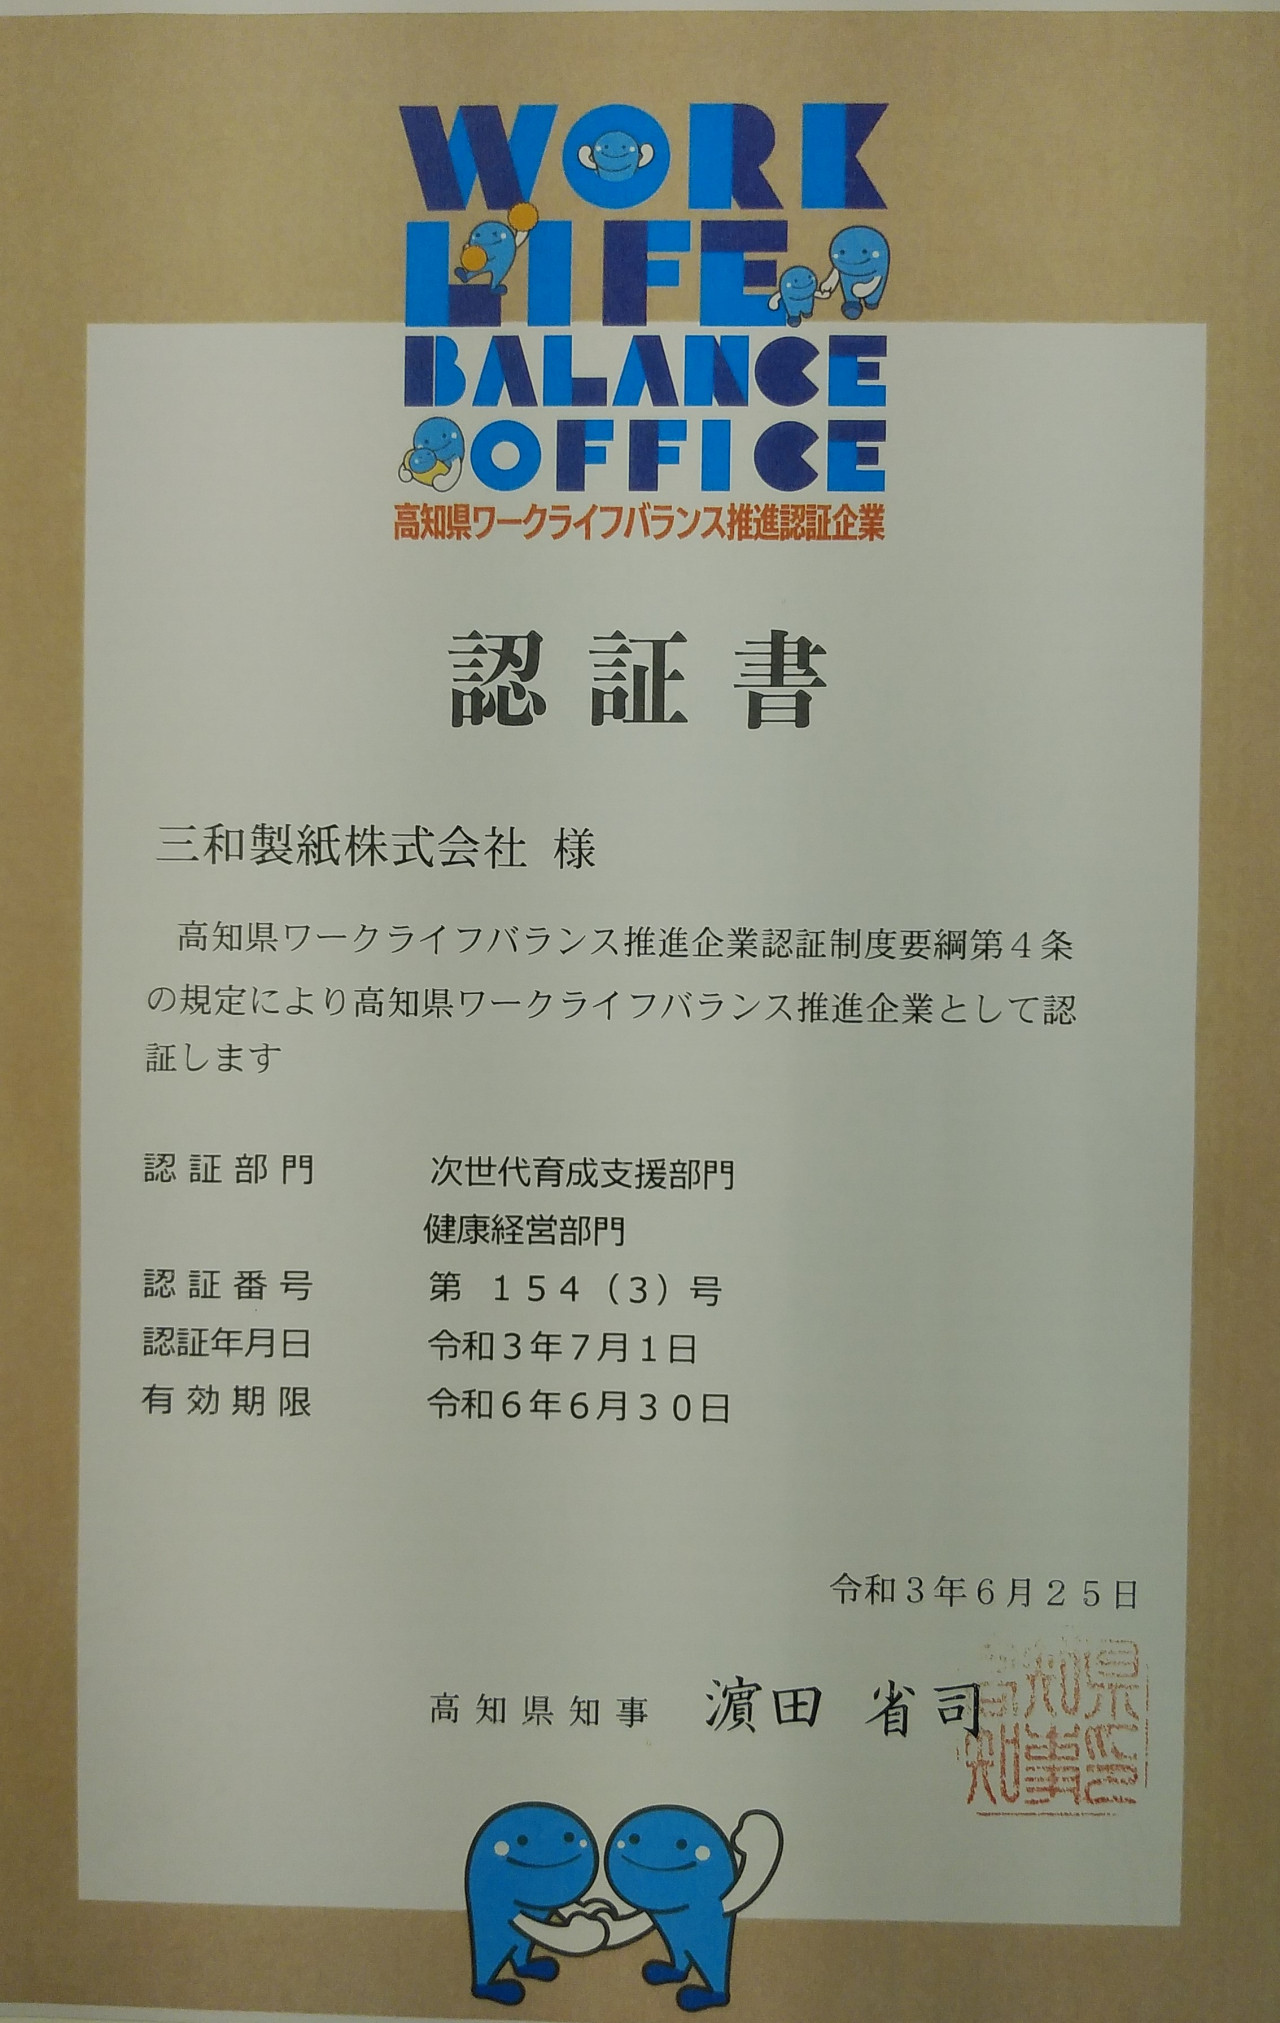 三和製紙株式会社が高知県ワークライフバランス推進認証企業に認証されました。